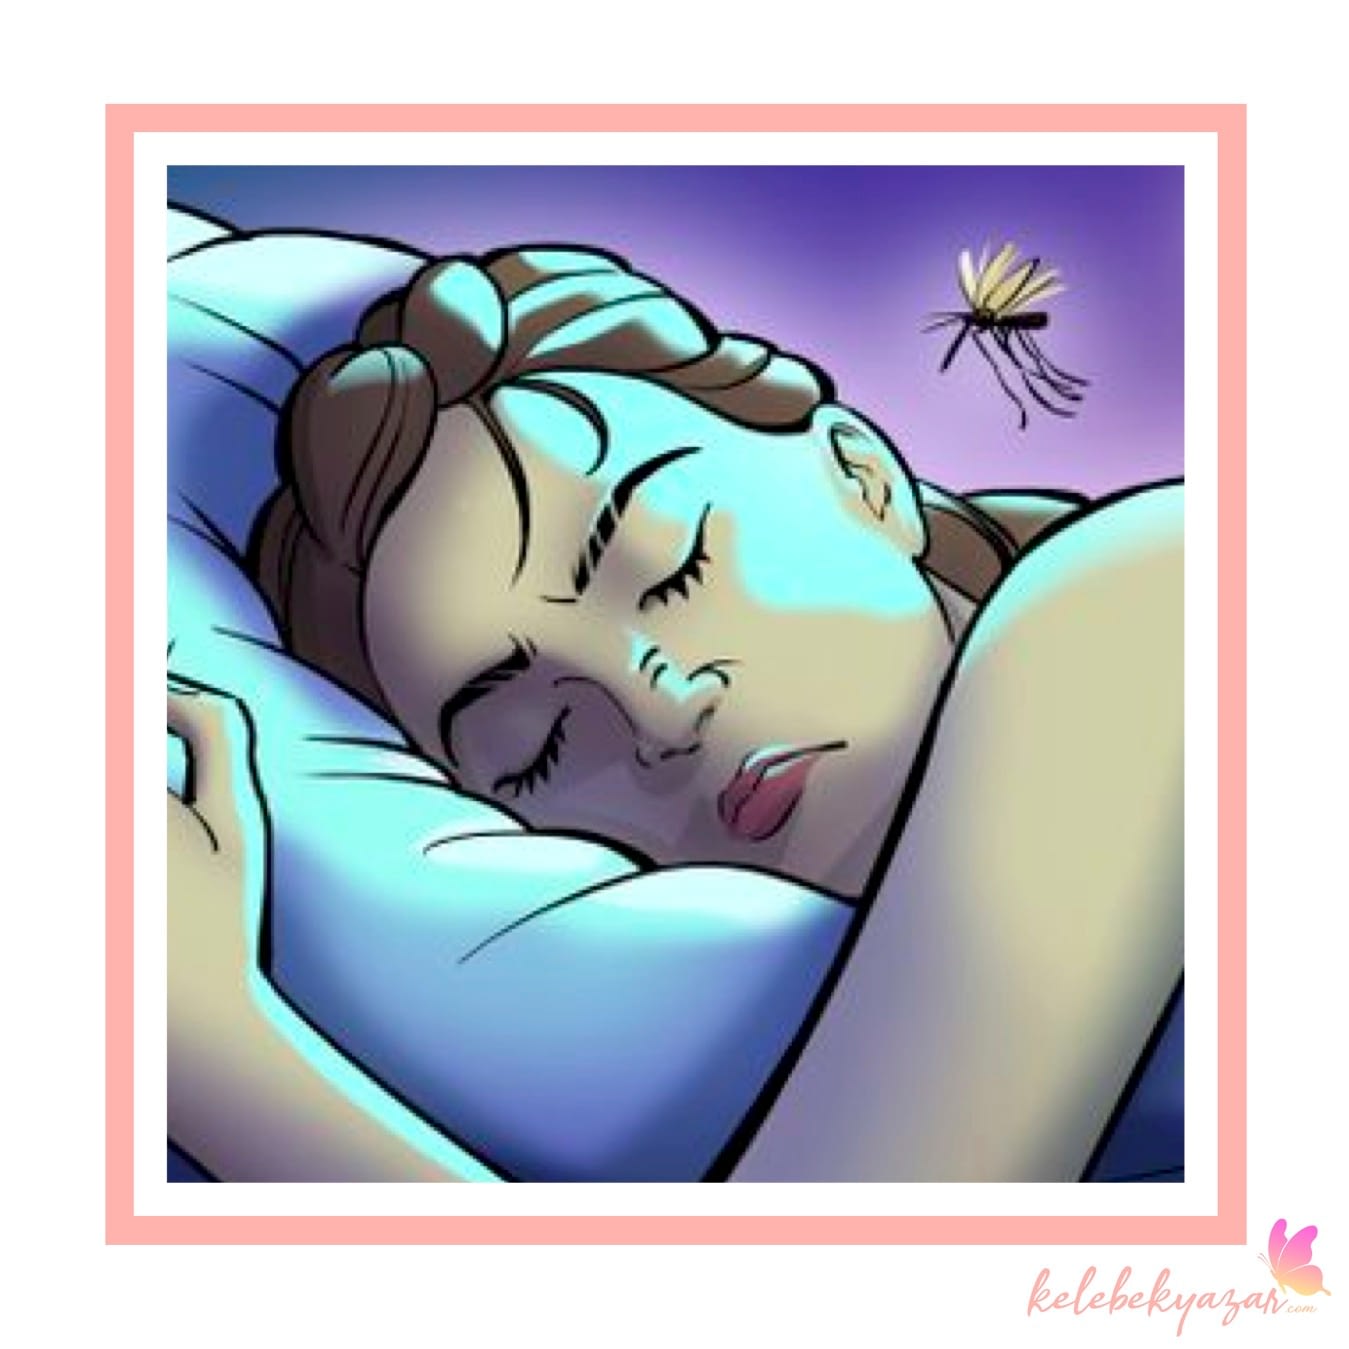 Sivrisinekler Neden Kulağımızda Vızıldar?